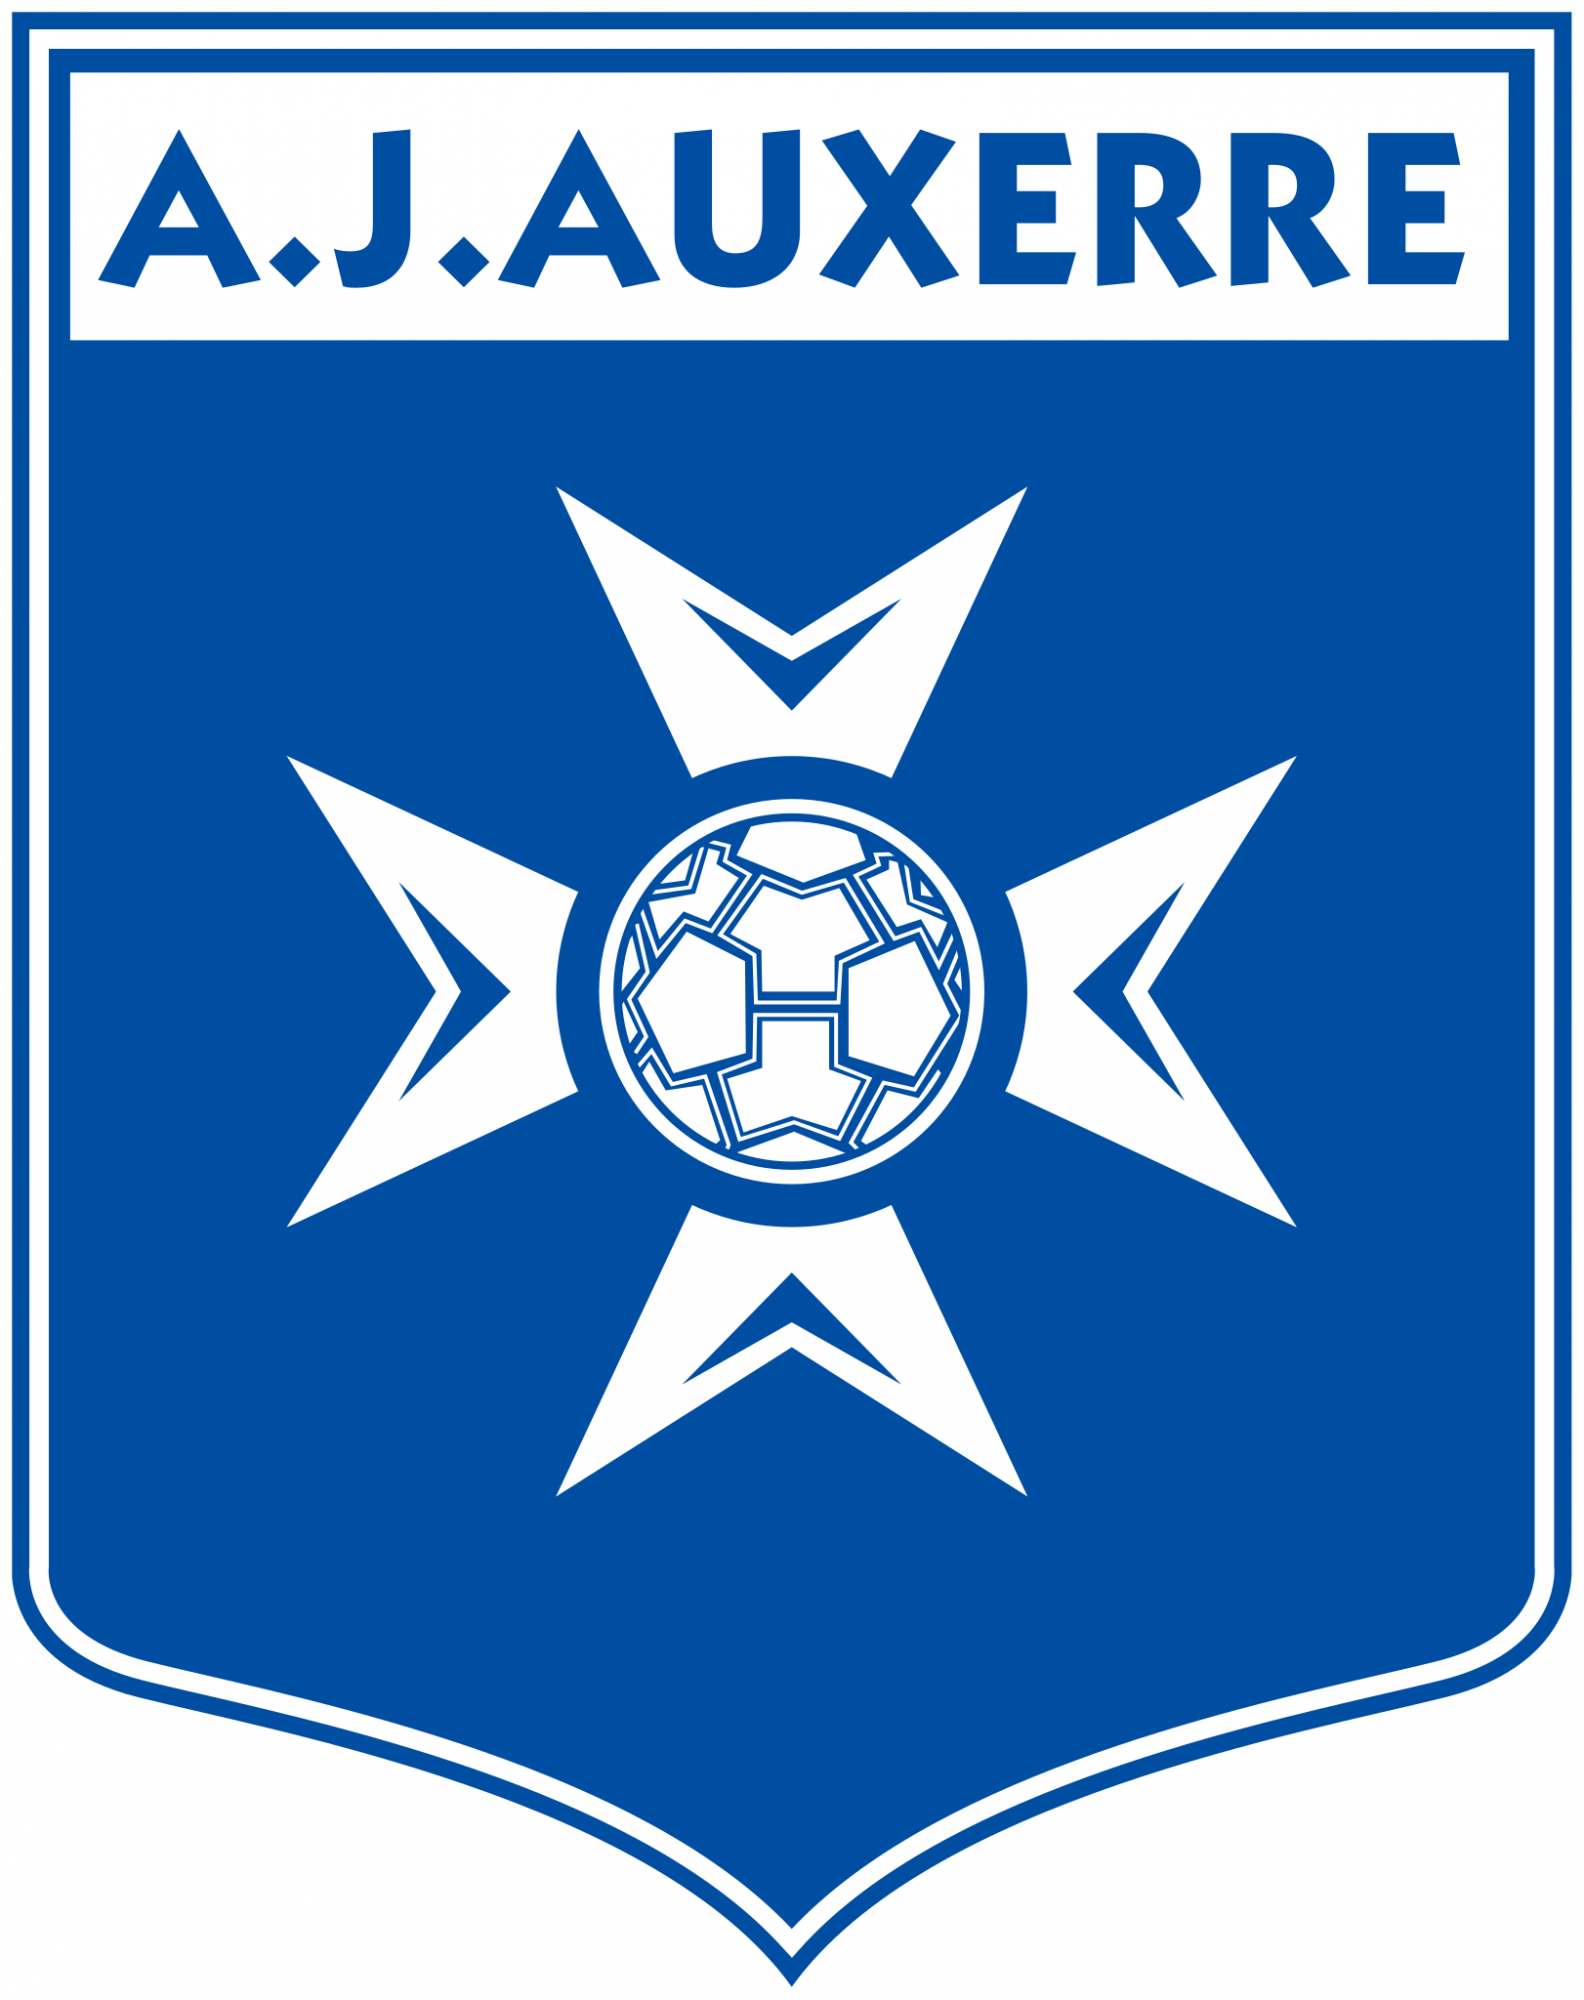 Logo_AJ_Auxerre.svg_.png